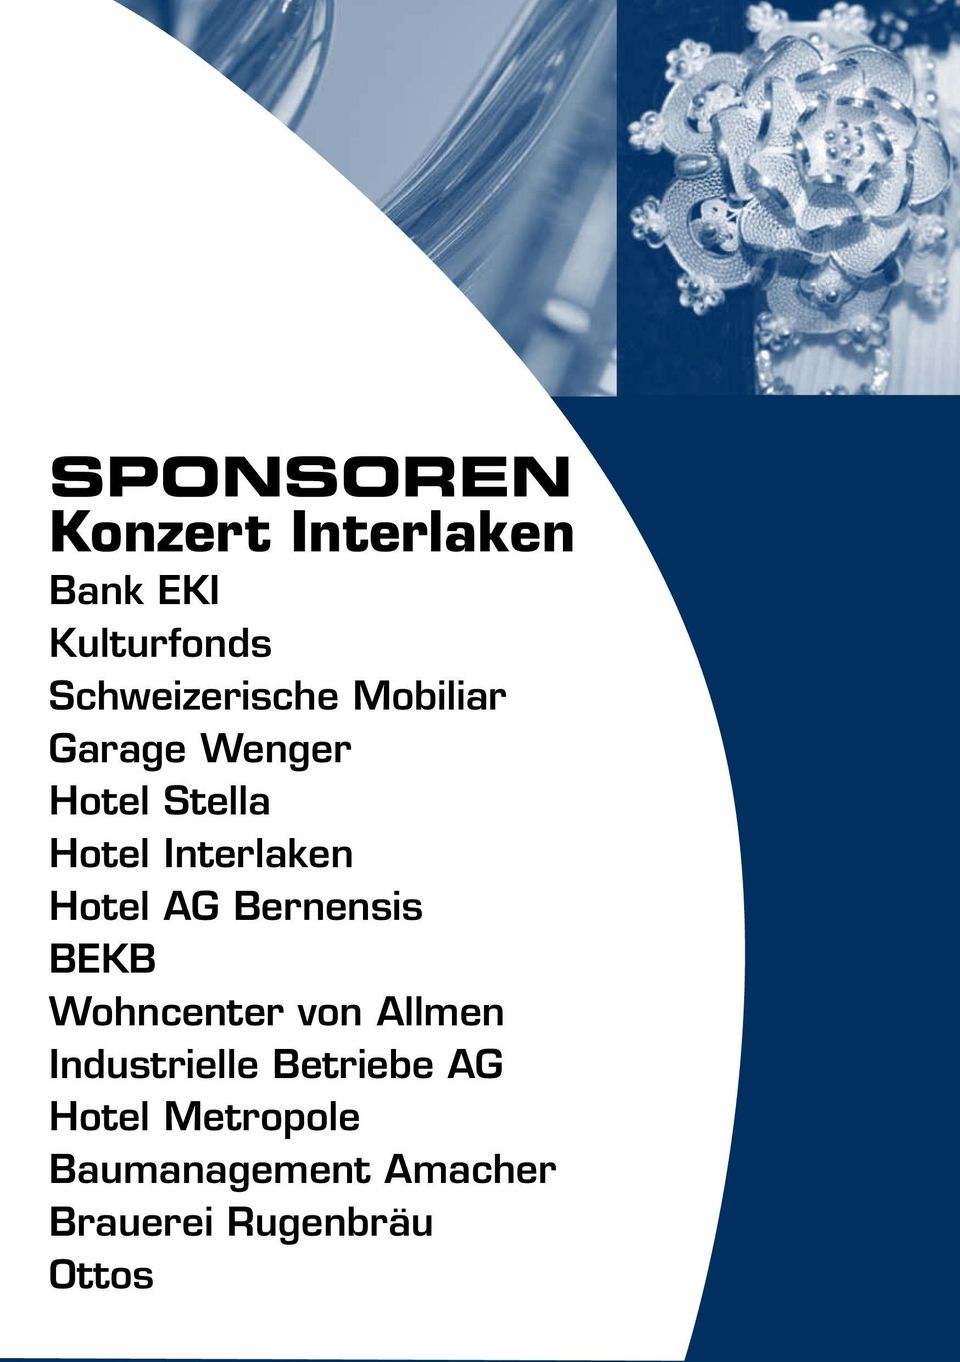 Interlaken Hotel AG Bernensis BEKB Wohncenter von Allmen